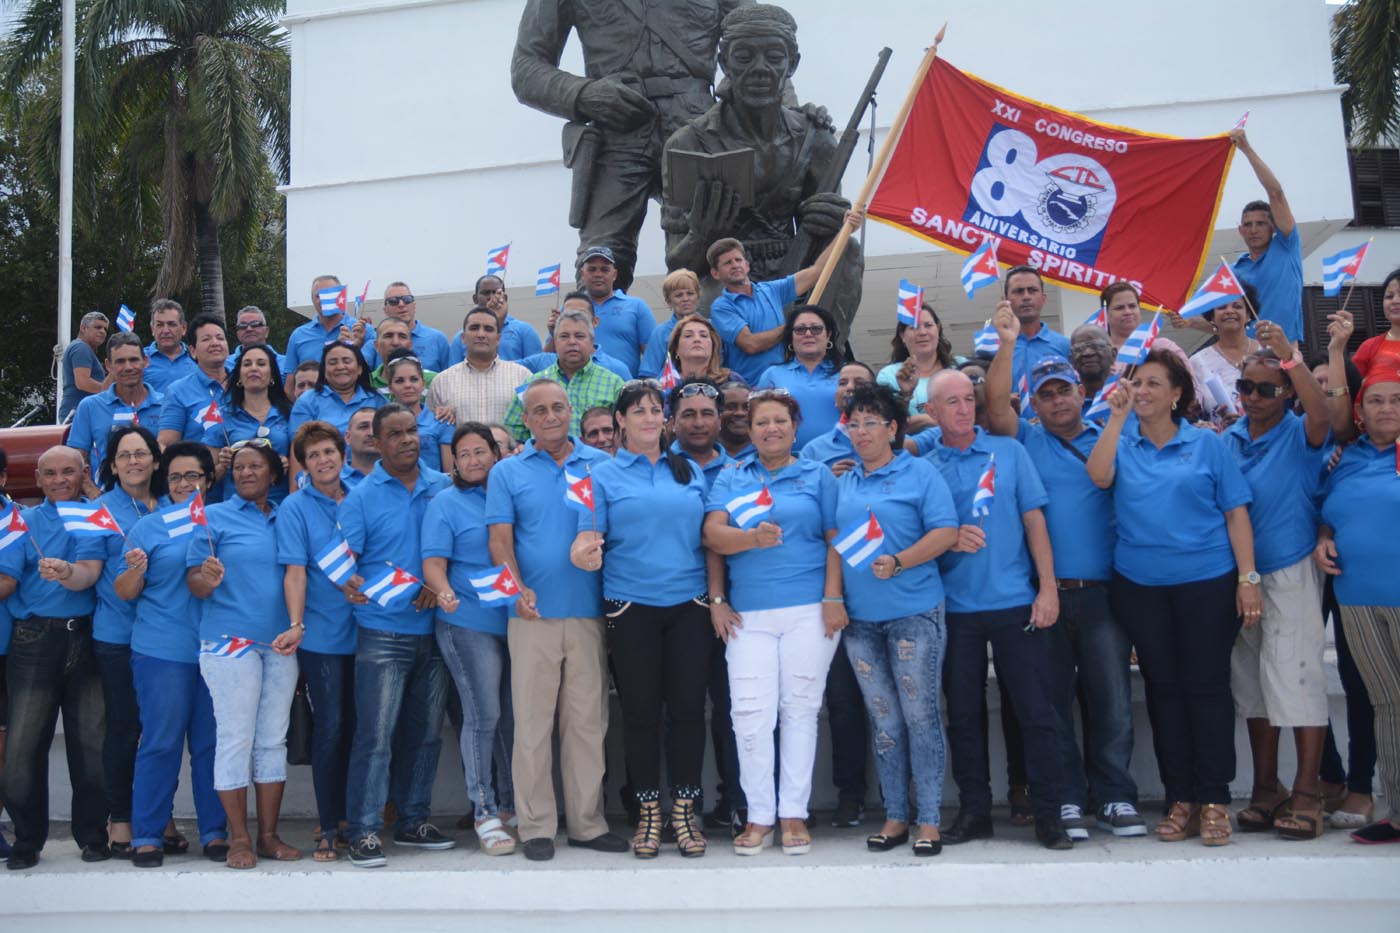 Los 54 delegados espirituanos, que participarán en la magna cita de los trabajadores cubanos, ondearon la bandera del XXI Congreso de la CTC. Foto: Oscar Alfonso Sosa/ ACN